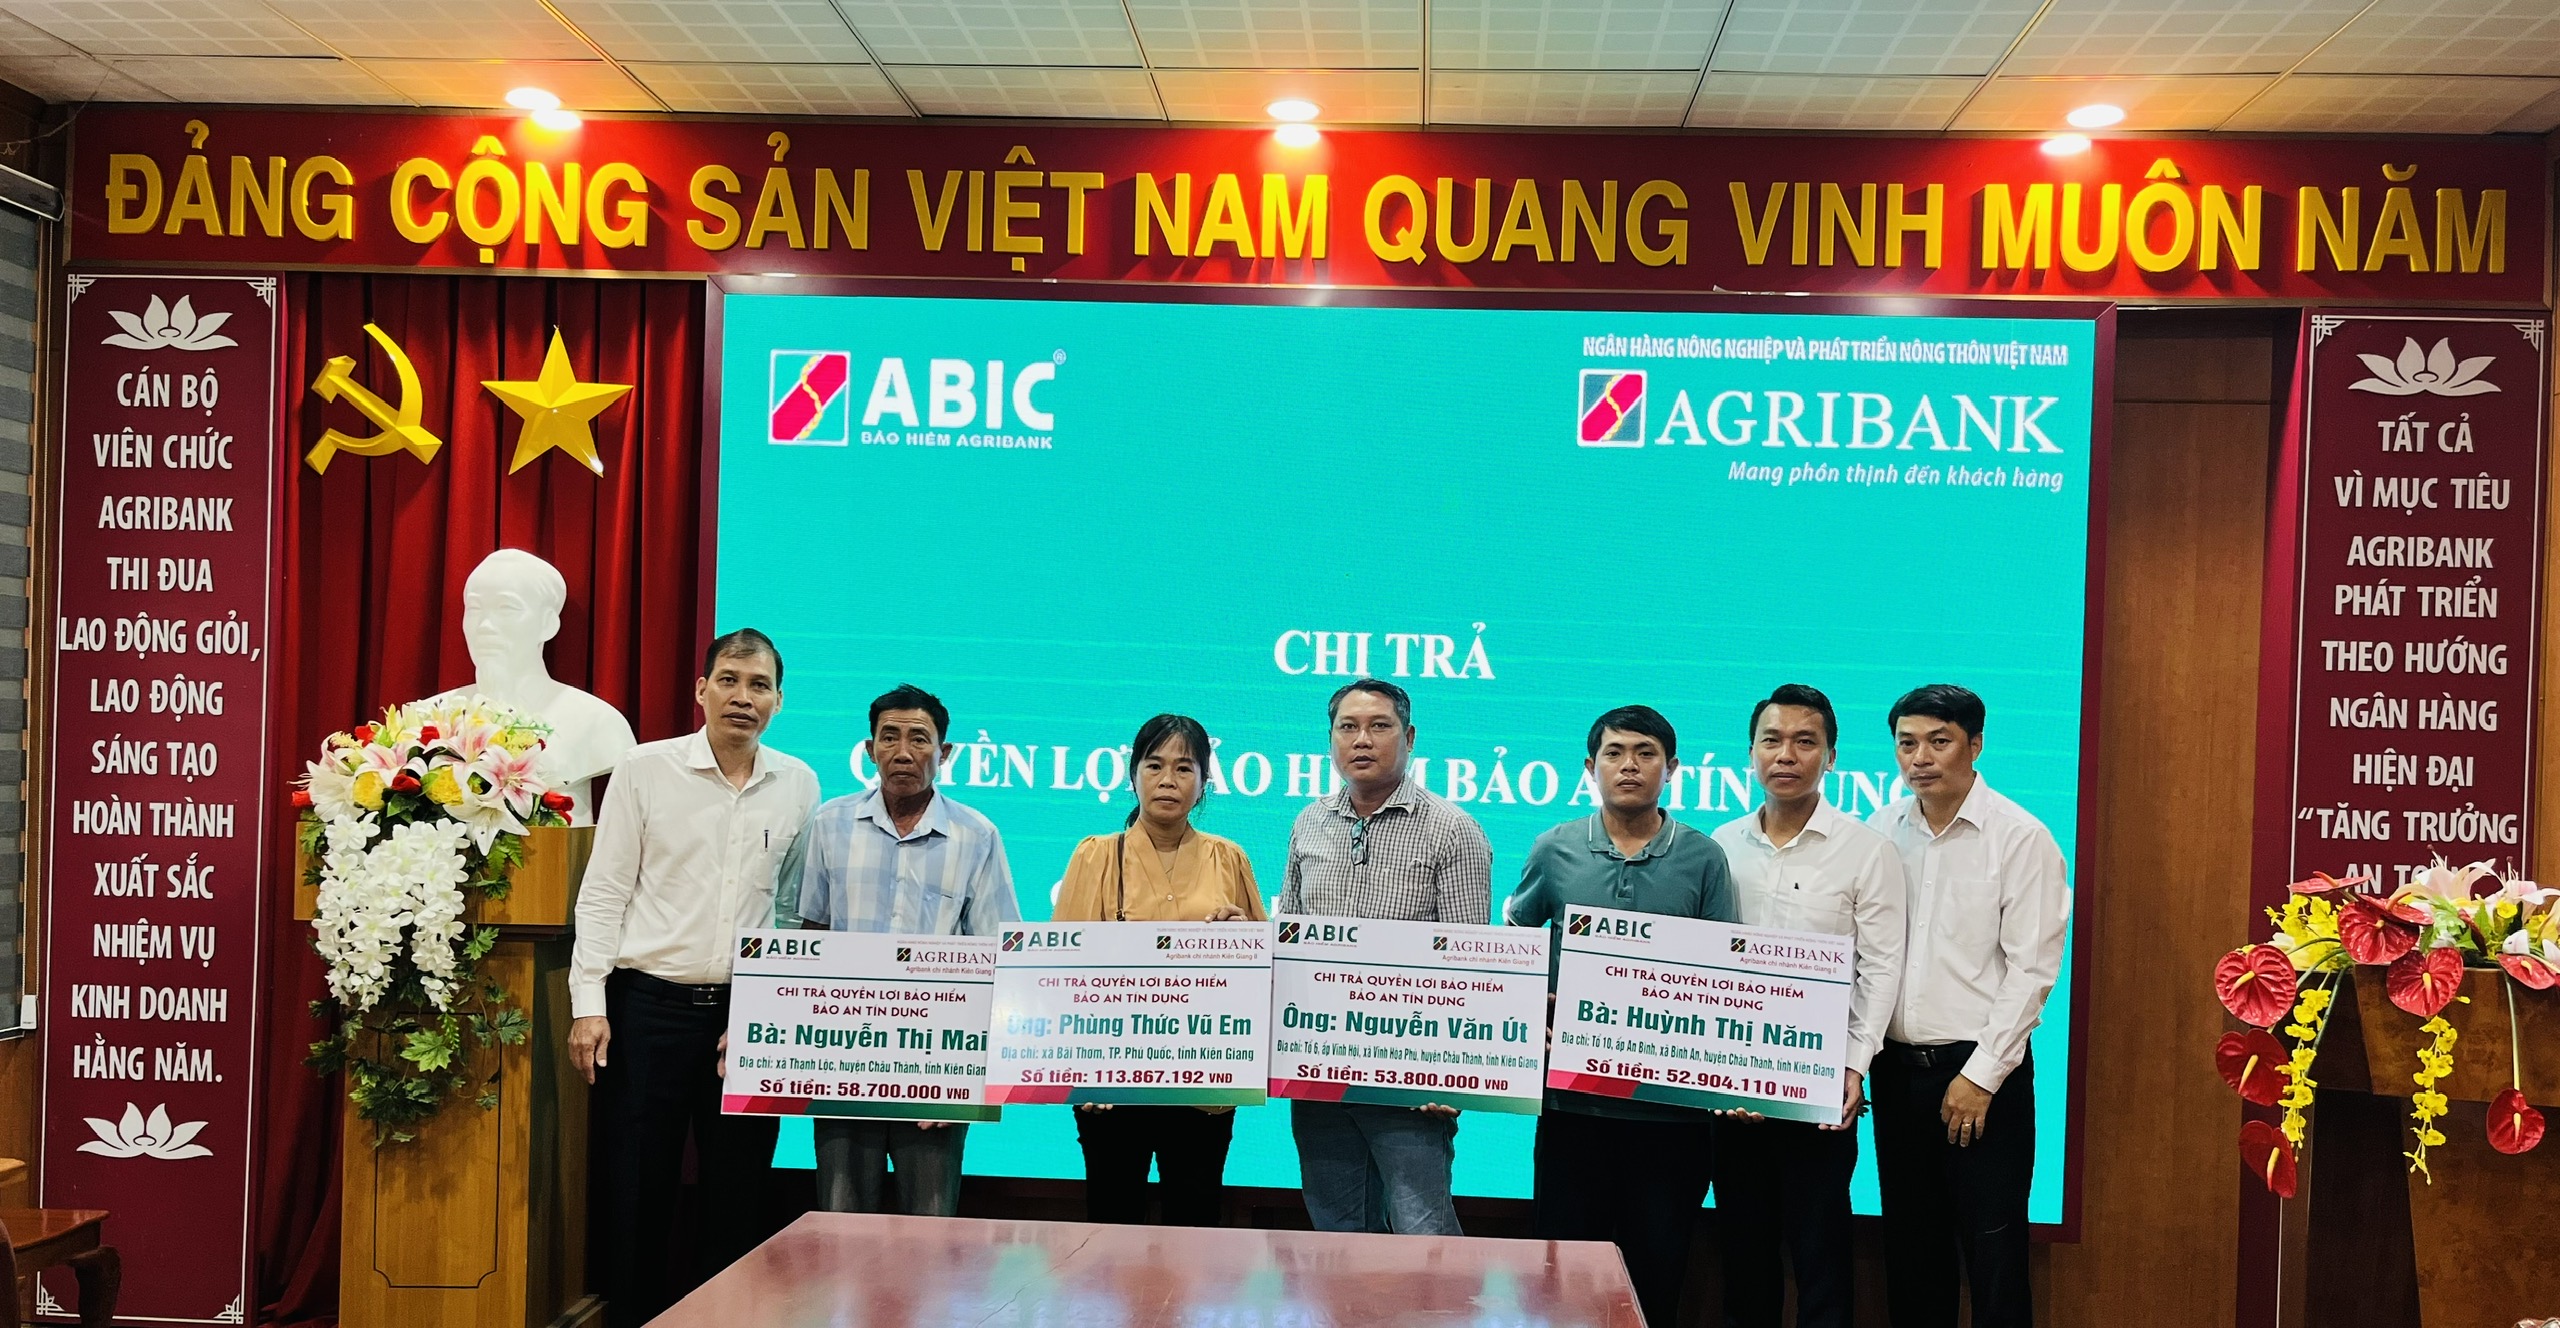 Bảo hiểm Agribank Kiên Giang chi trả hơn 279 triệu đồng cho gia đình các khách hàng vay vốn tại Agribank CN Kiên Giang II- Ảnh 1.